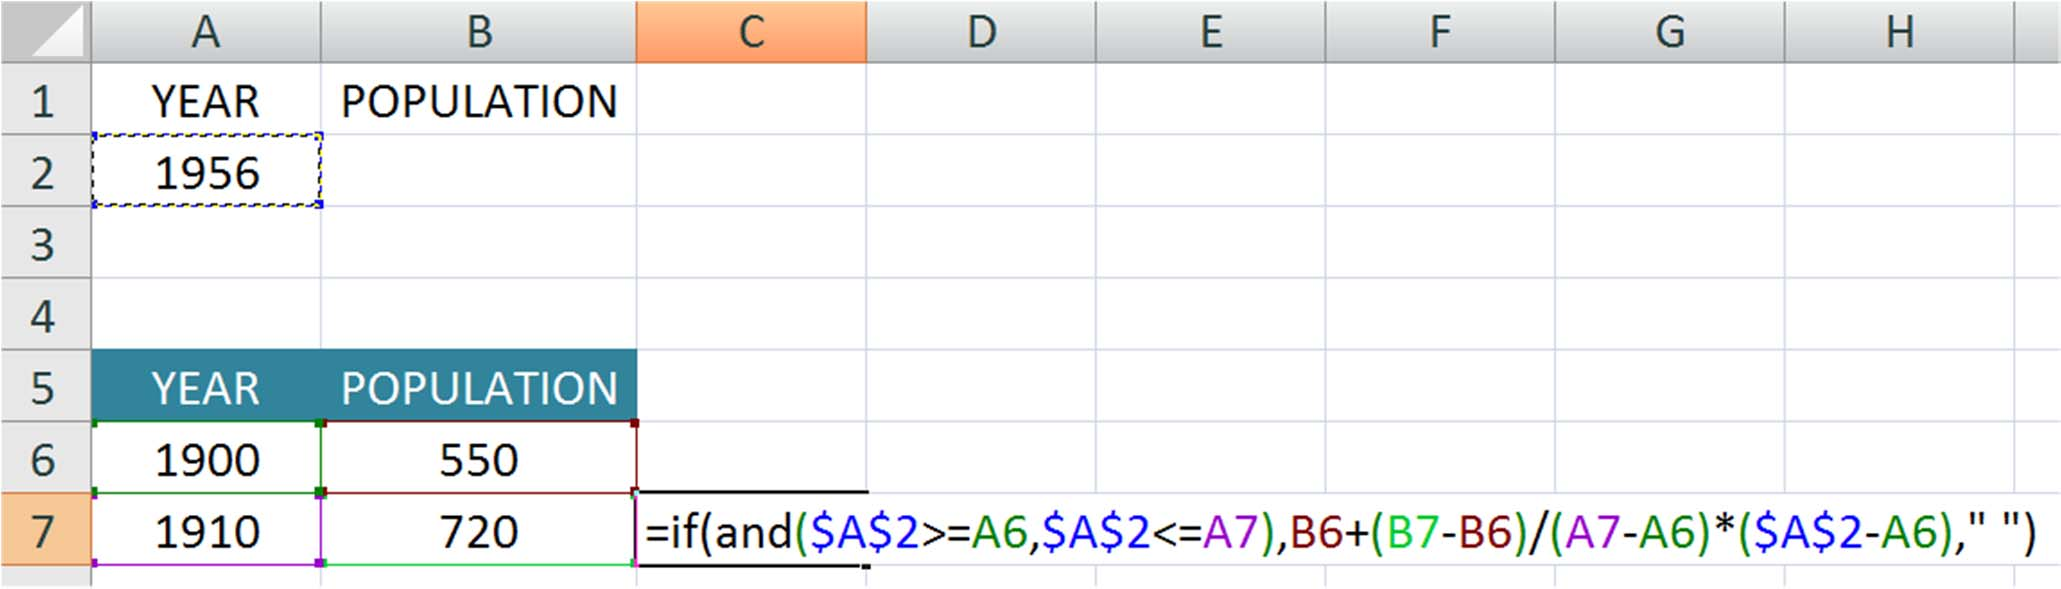 Γραμμική προσαρμογή σε ένα πίνακα του Excel Εάν η χρονιά που μας ζητάνε δεν είναι εντός του διαστήματος, τότε εισάγεται ένας κενός χαρακτήρας (space) στο